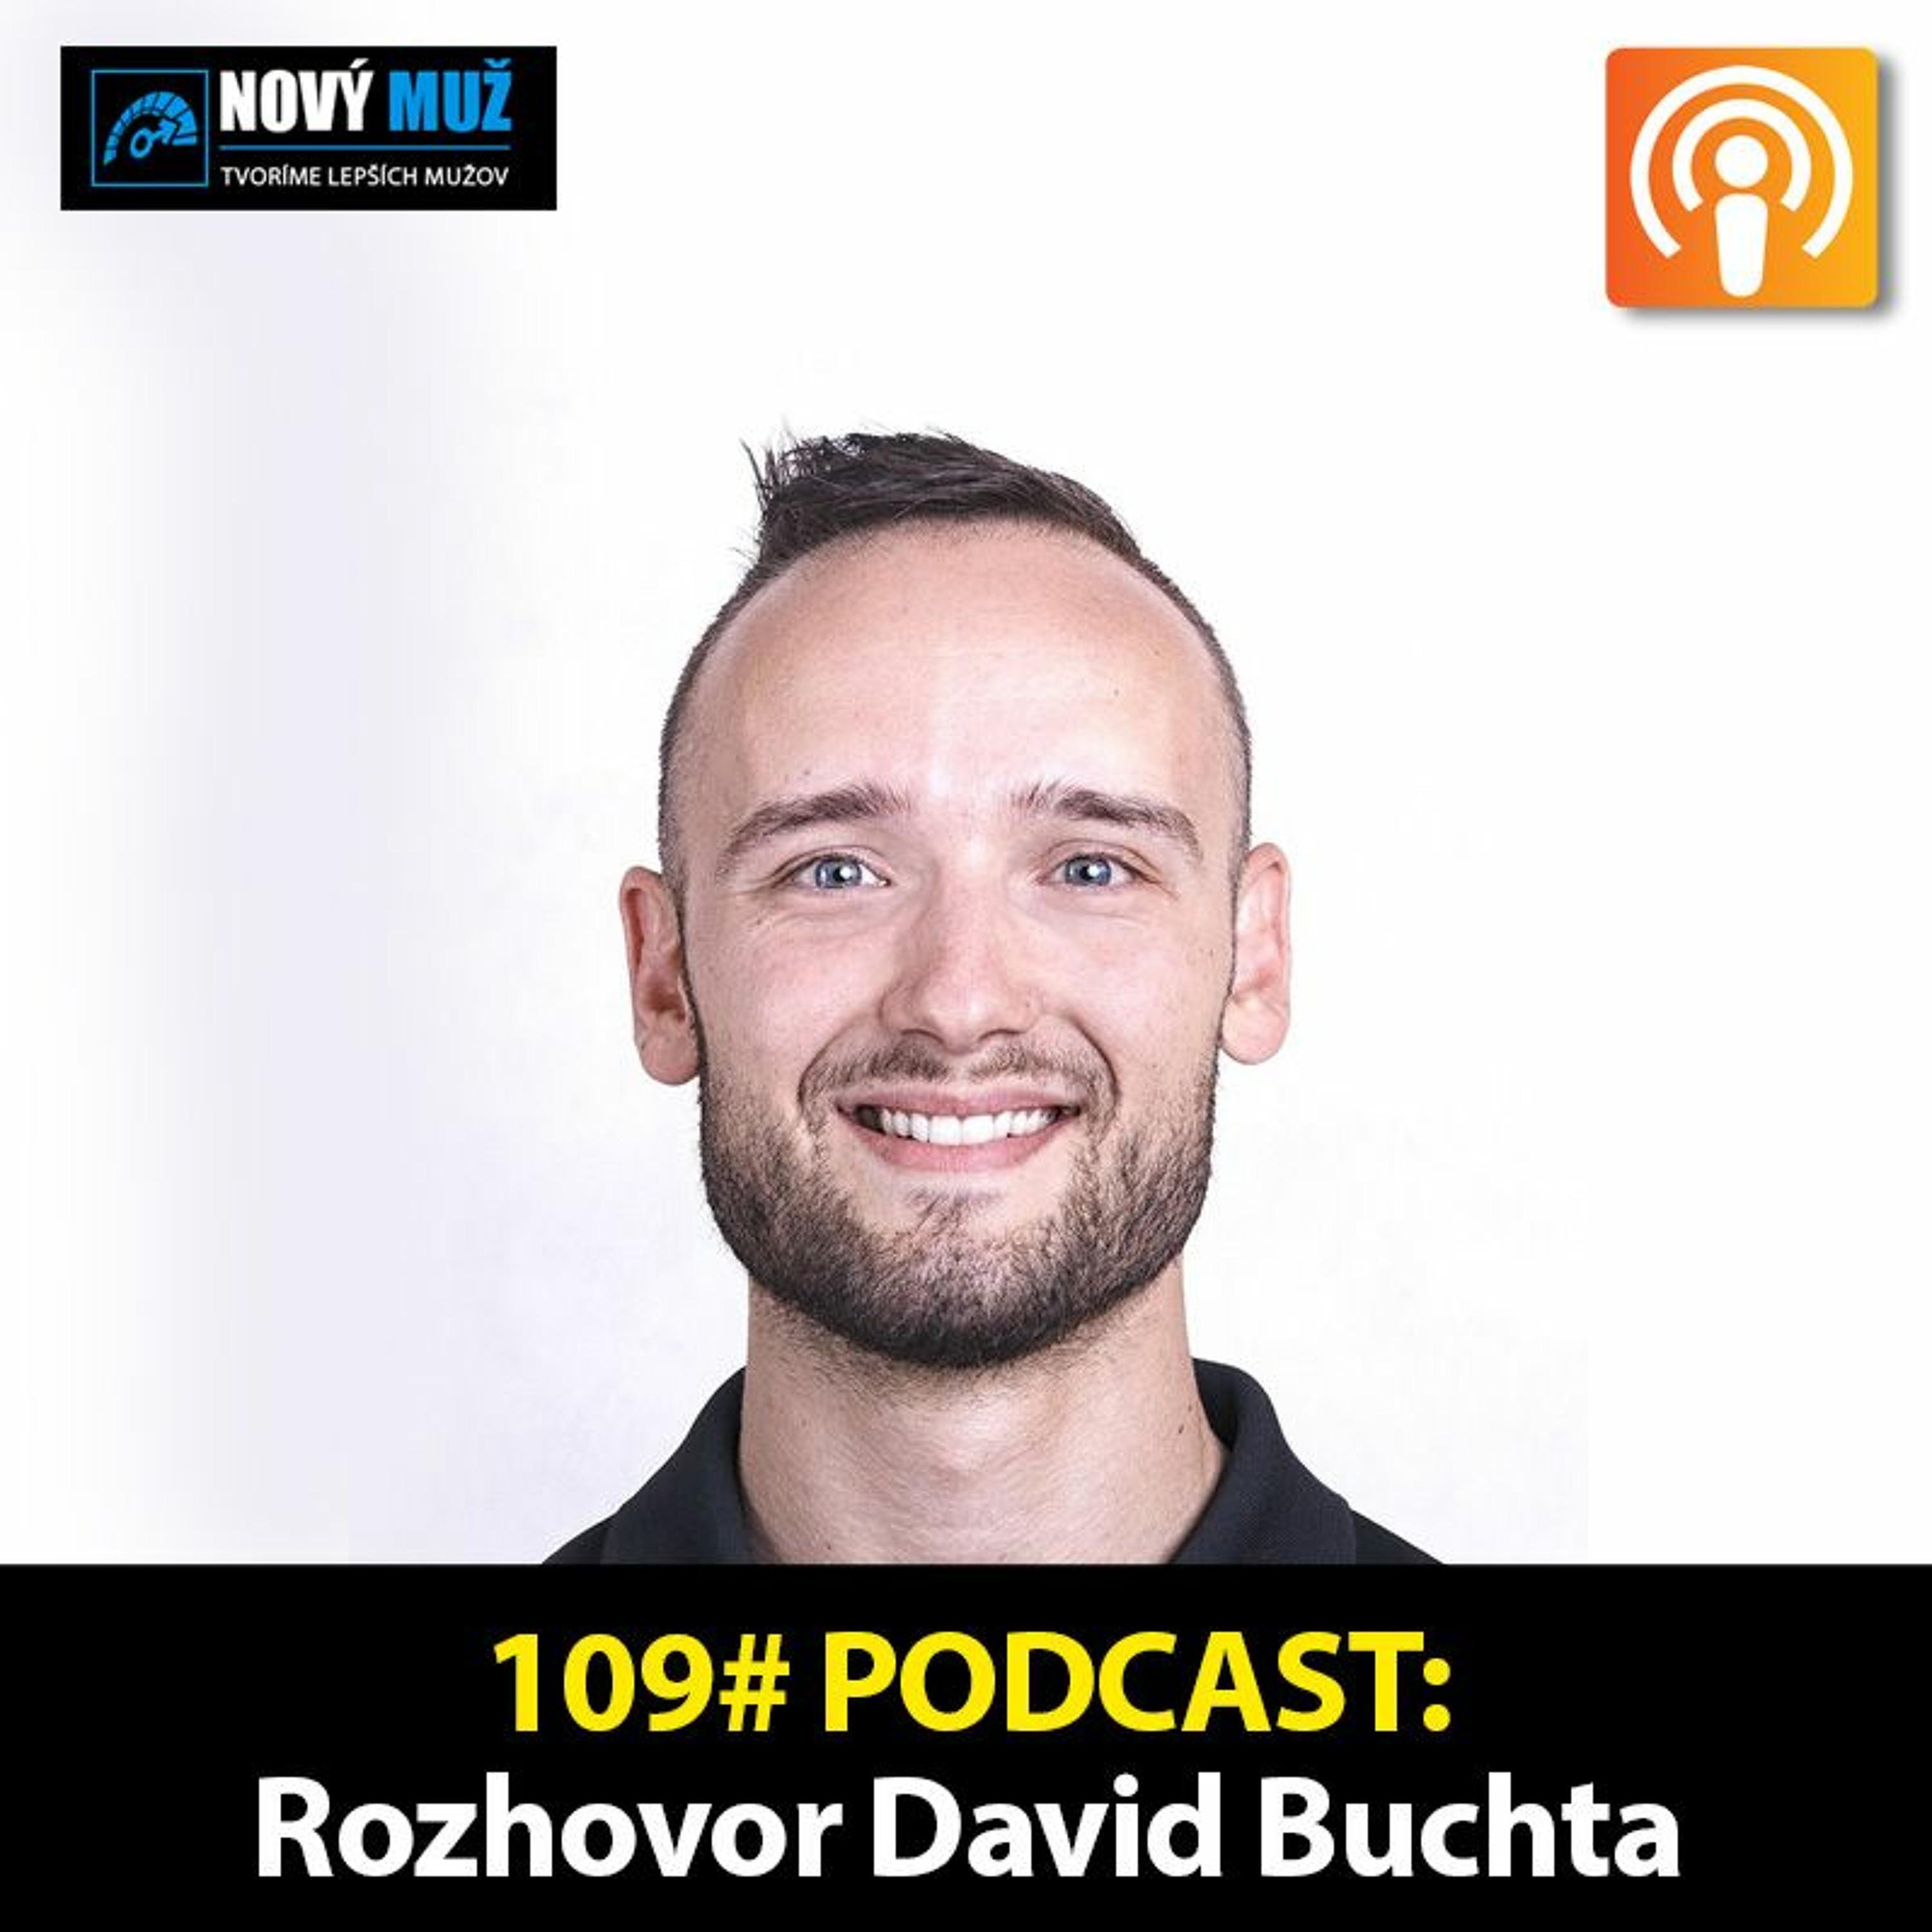 109#PODCAST - Ako zvýšiť hladinu testosterónu - Rozhovor David Buchta